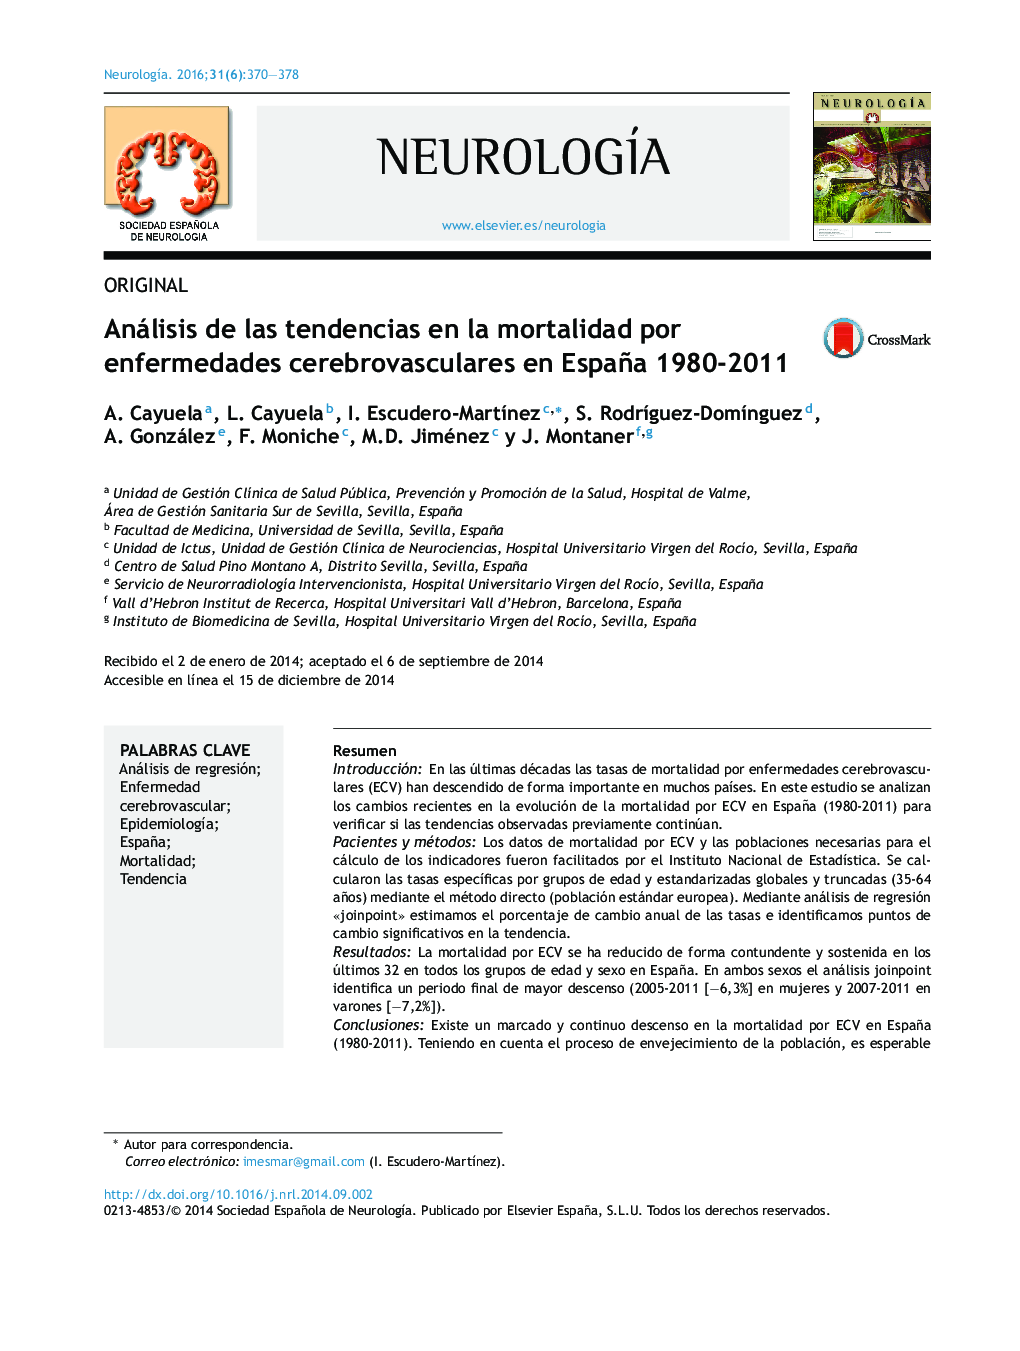 Análisis de las tendencias en la mortalidad por enfermedades cerebrovasculares en España 1980-2011